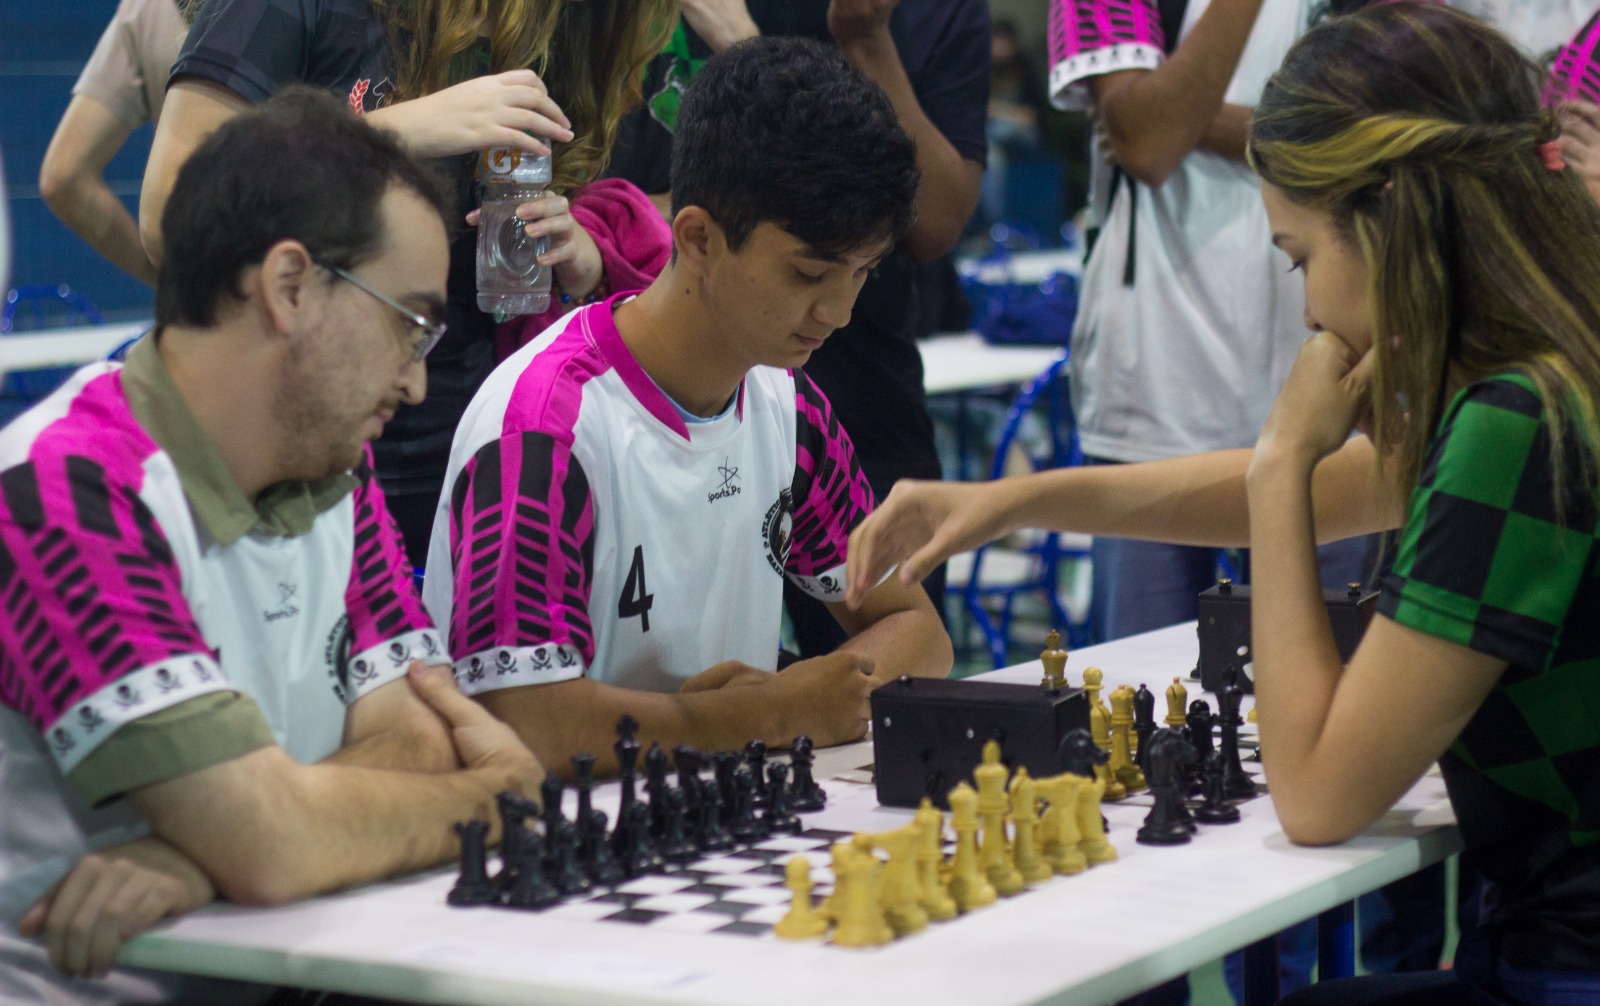 Santos abre novas vagas gratuitas para aulas de xadrez na segunda-feira